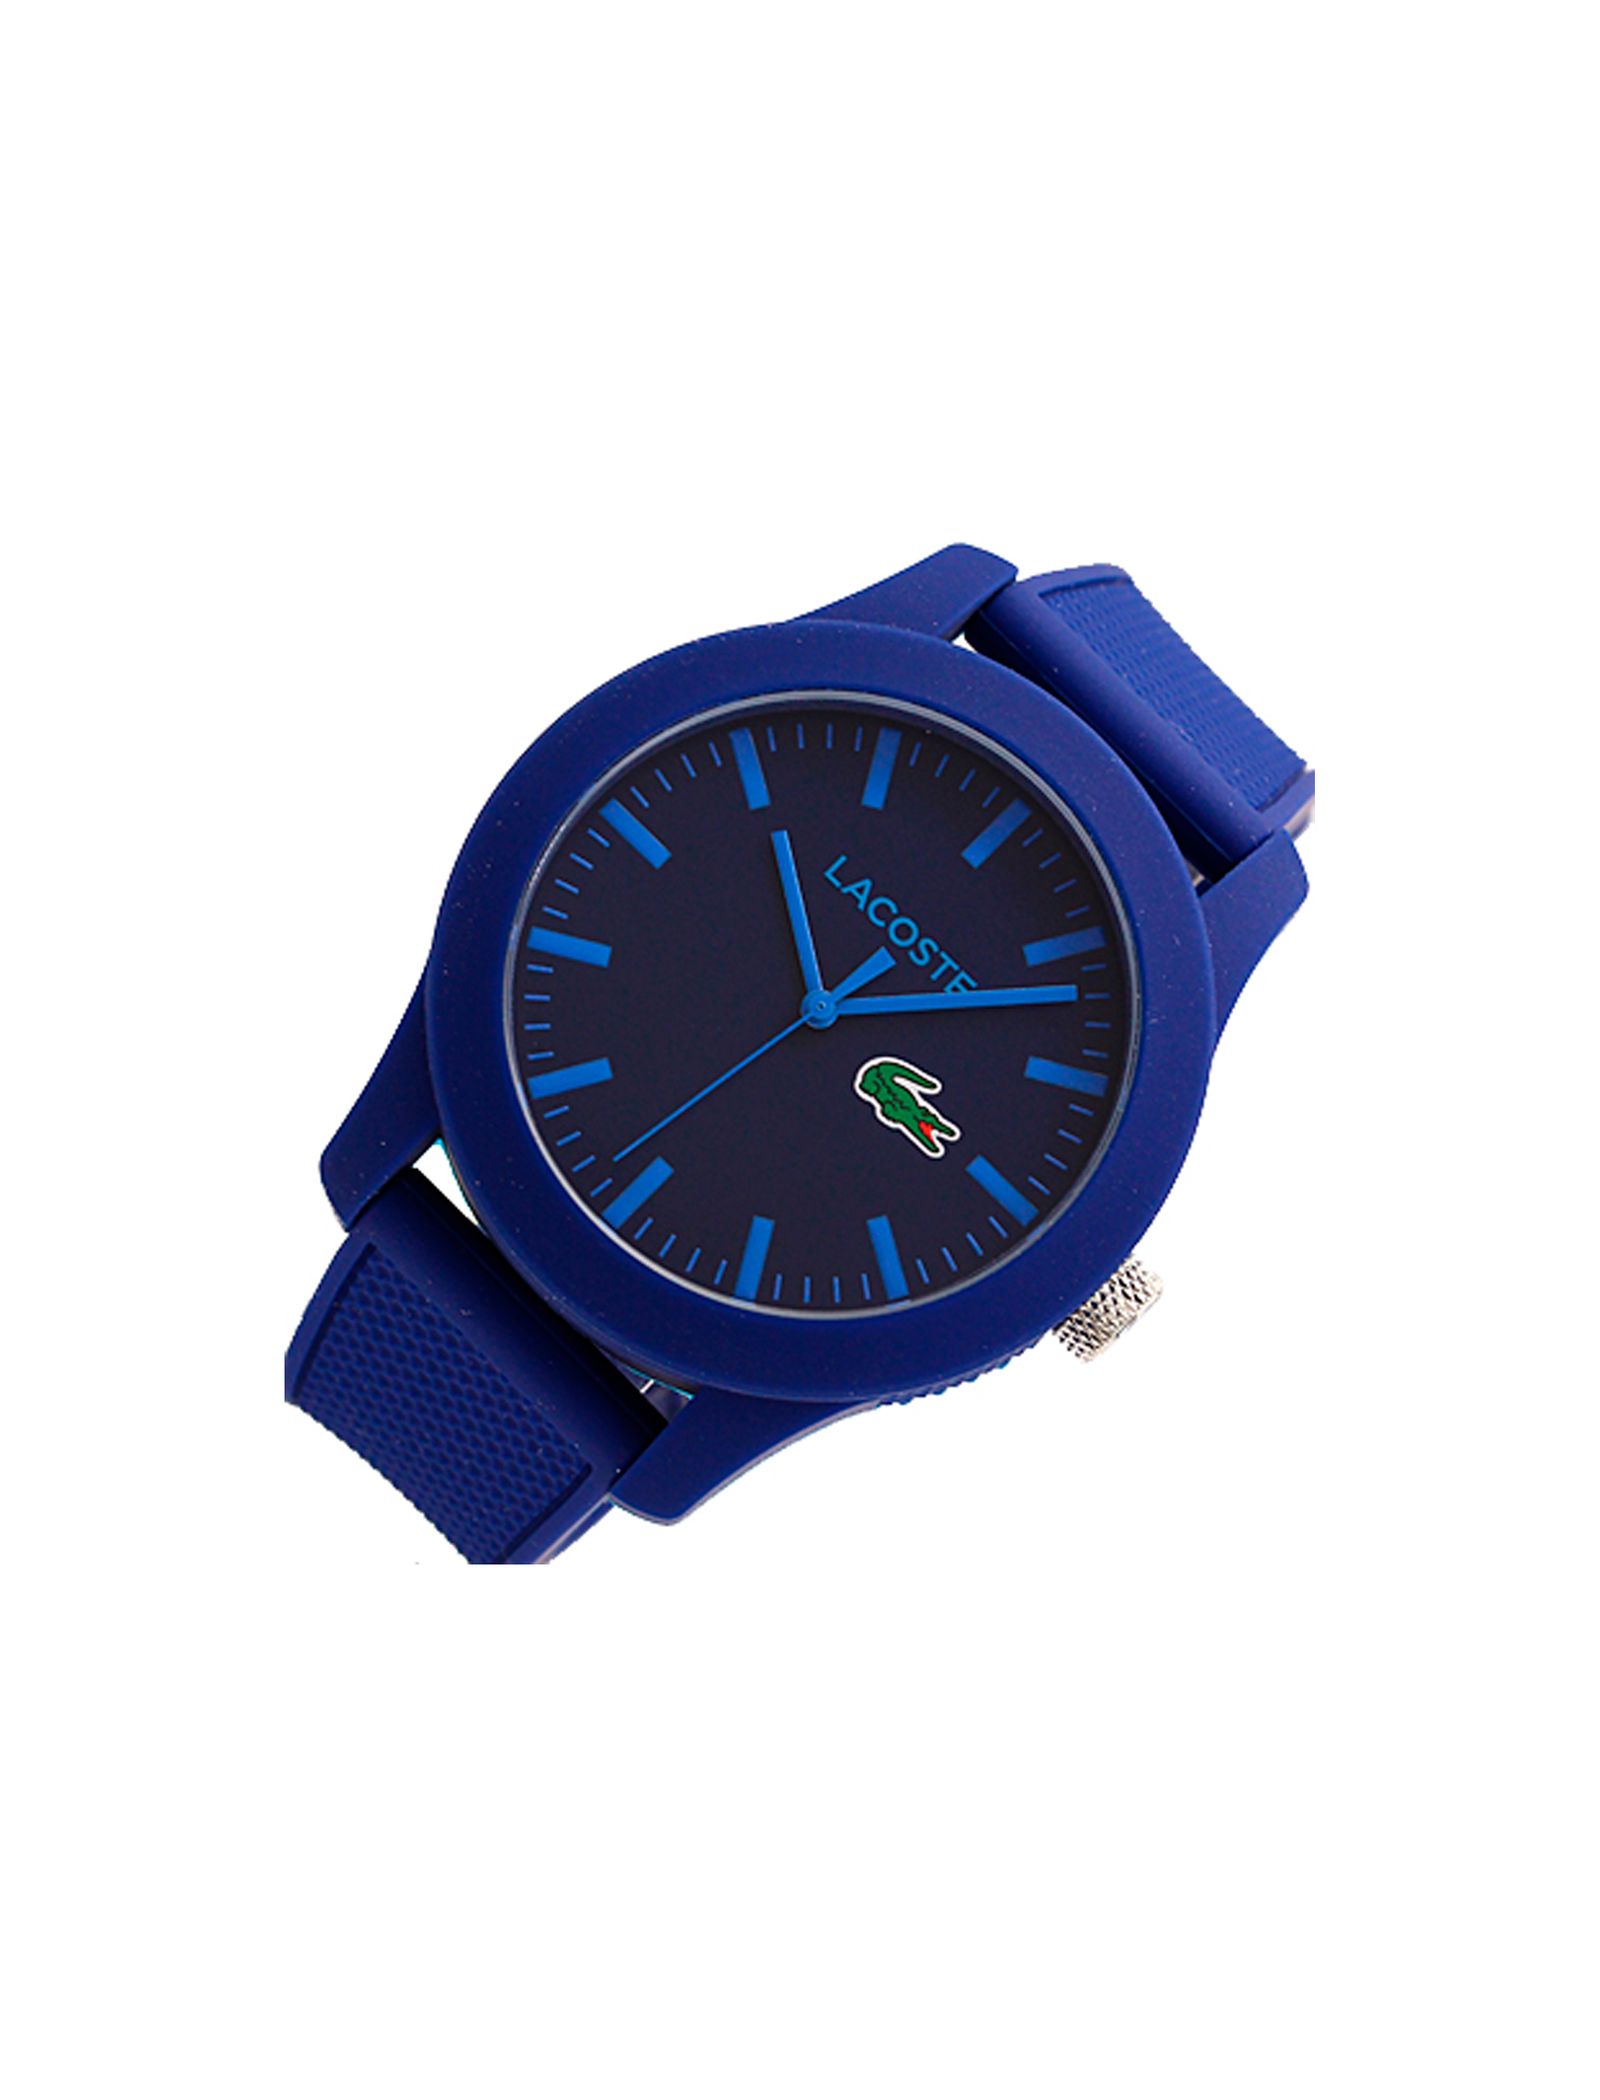 ساعت مچی عقربه ای مردانه لاگوست مدل 2010765 - آبی - 3